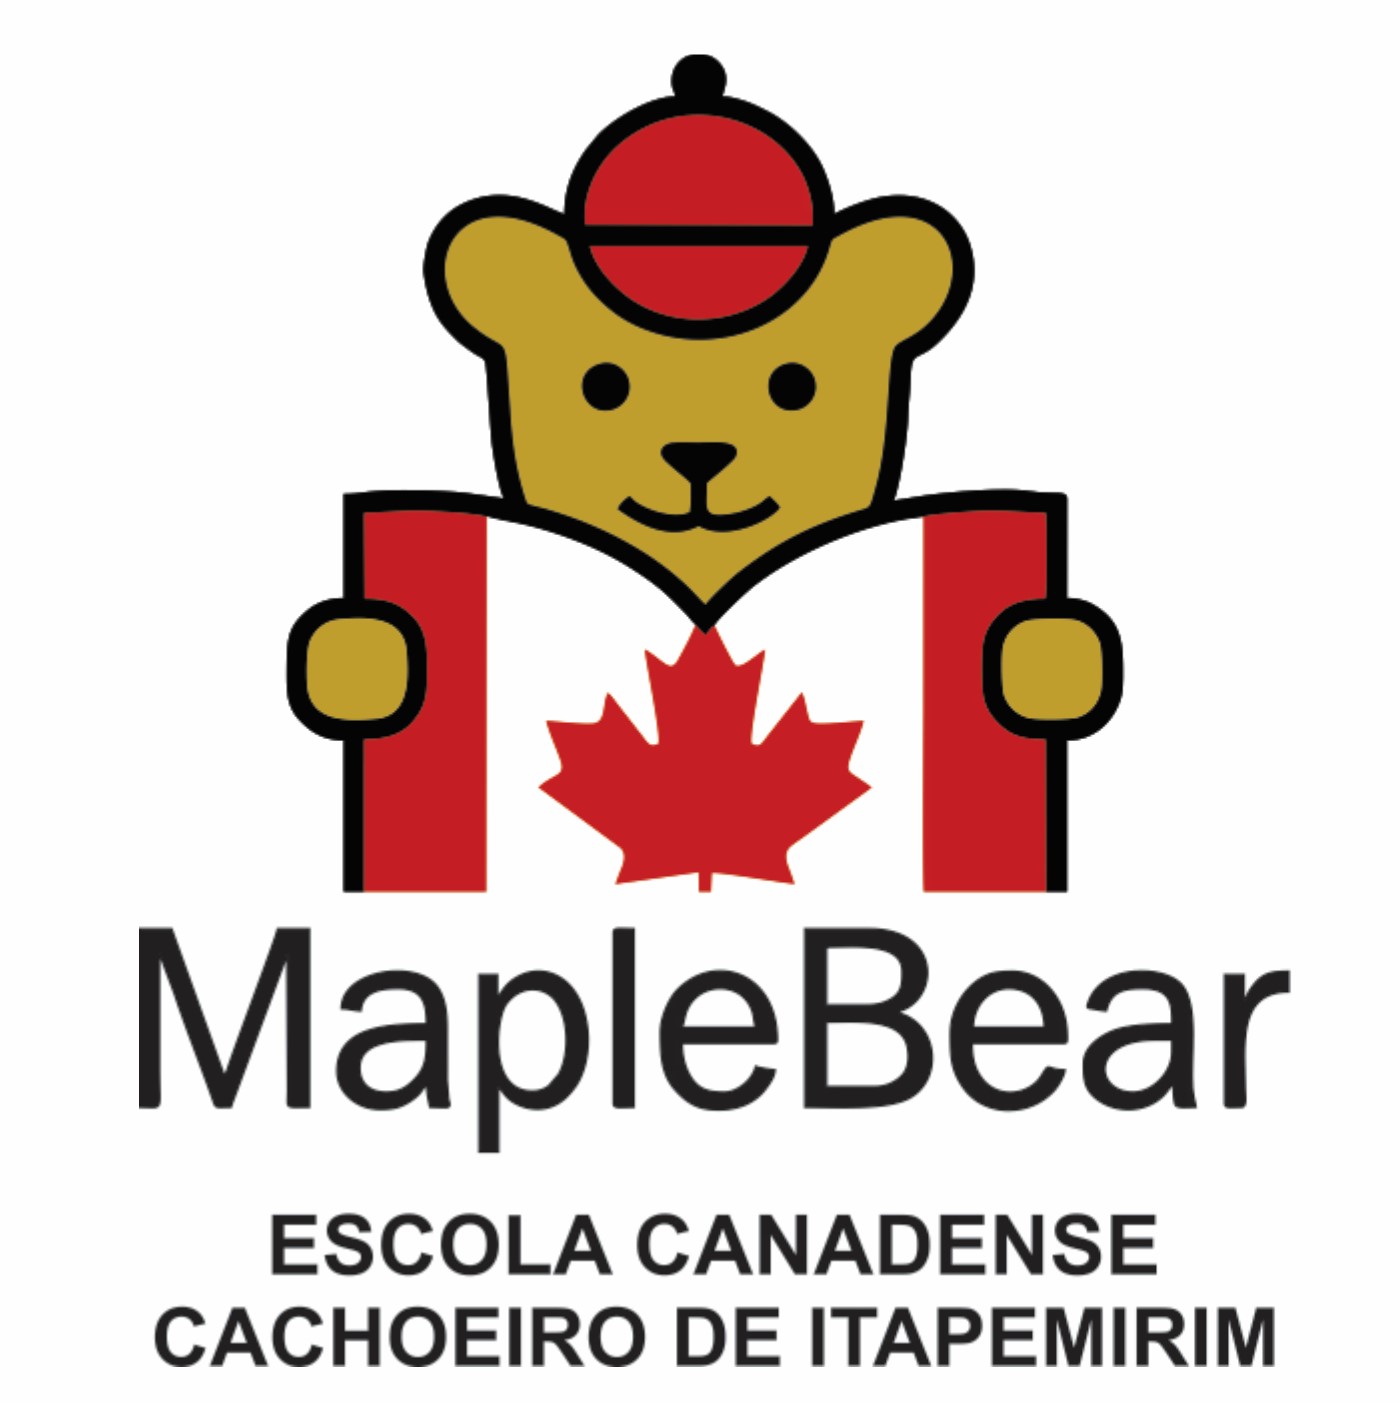 Escola Canadense Maple Bear Cachoeiro de Itapemiri logo